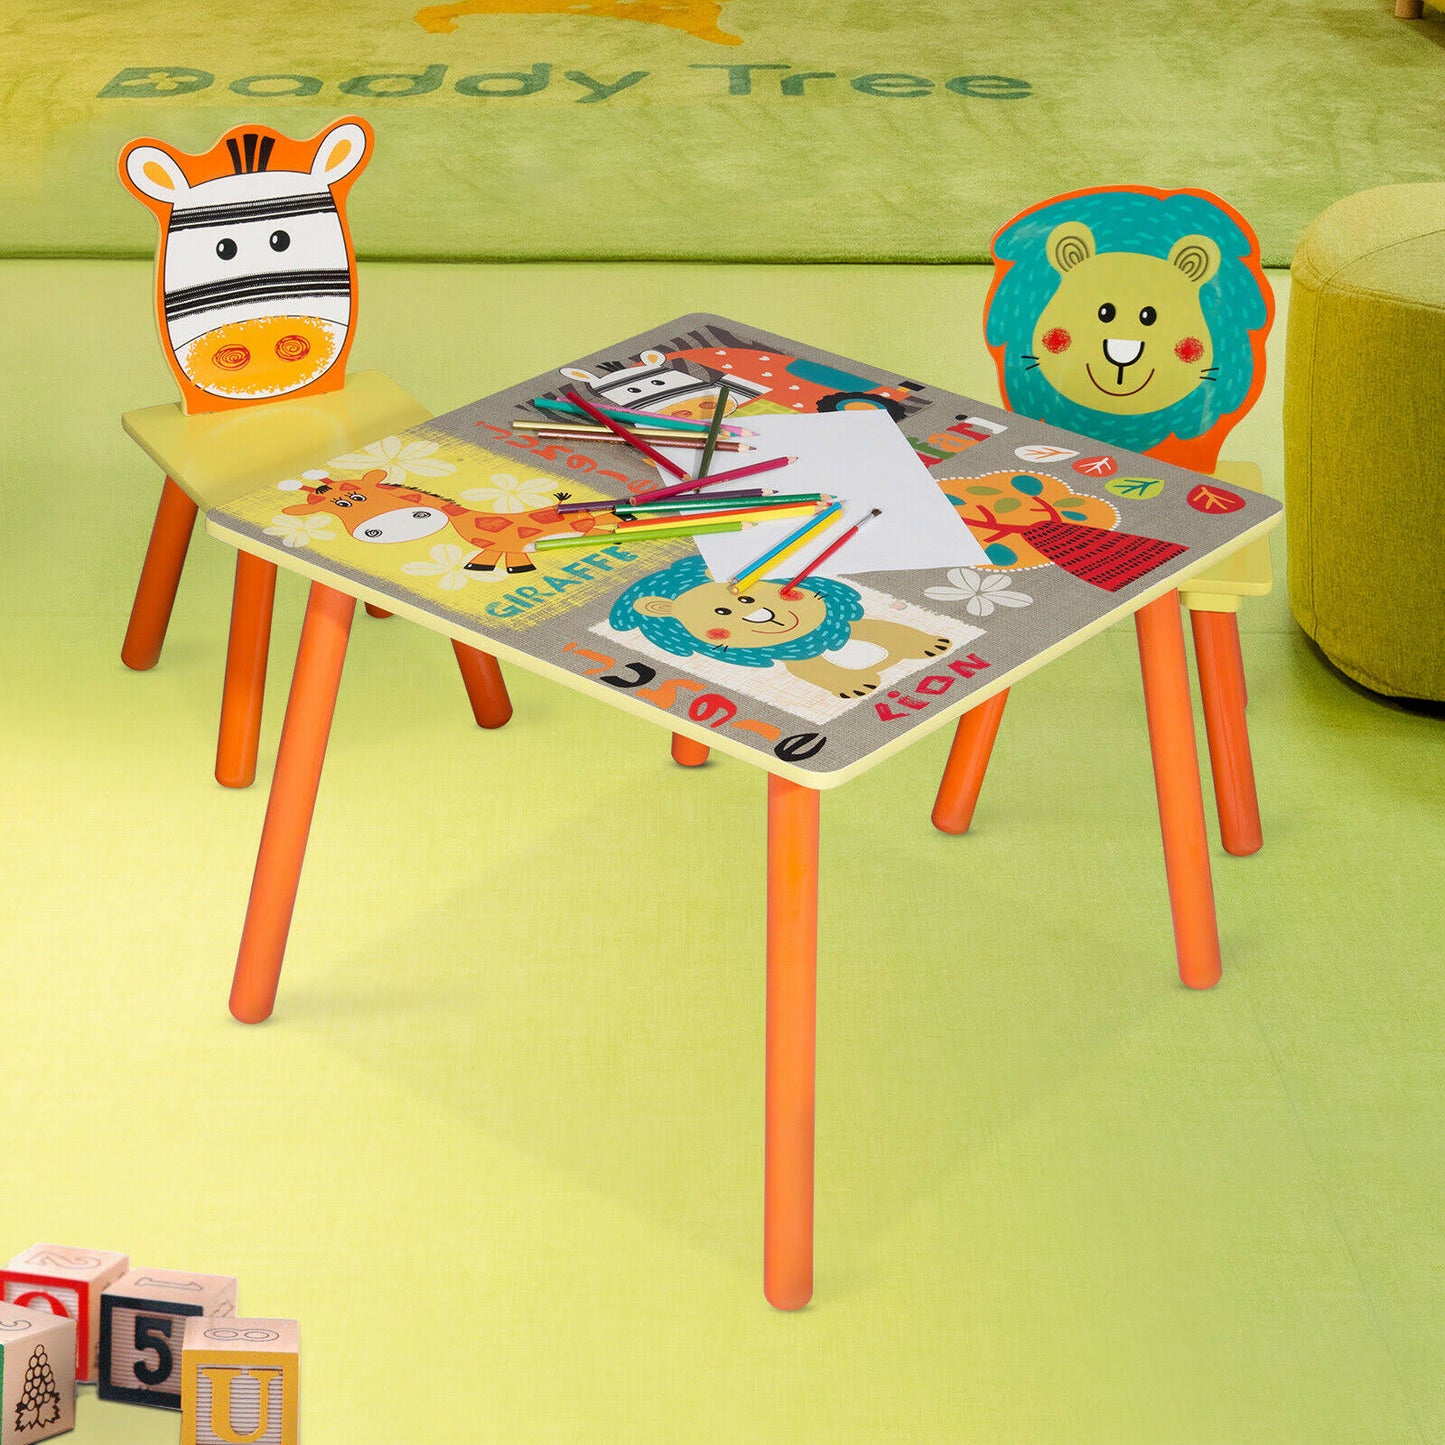 Детска Маса с 2 Столчета, Комплект от Дърво - за Учене, Игра, Рисуване, Хранене - SAFARI